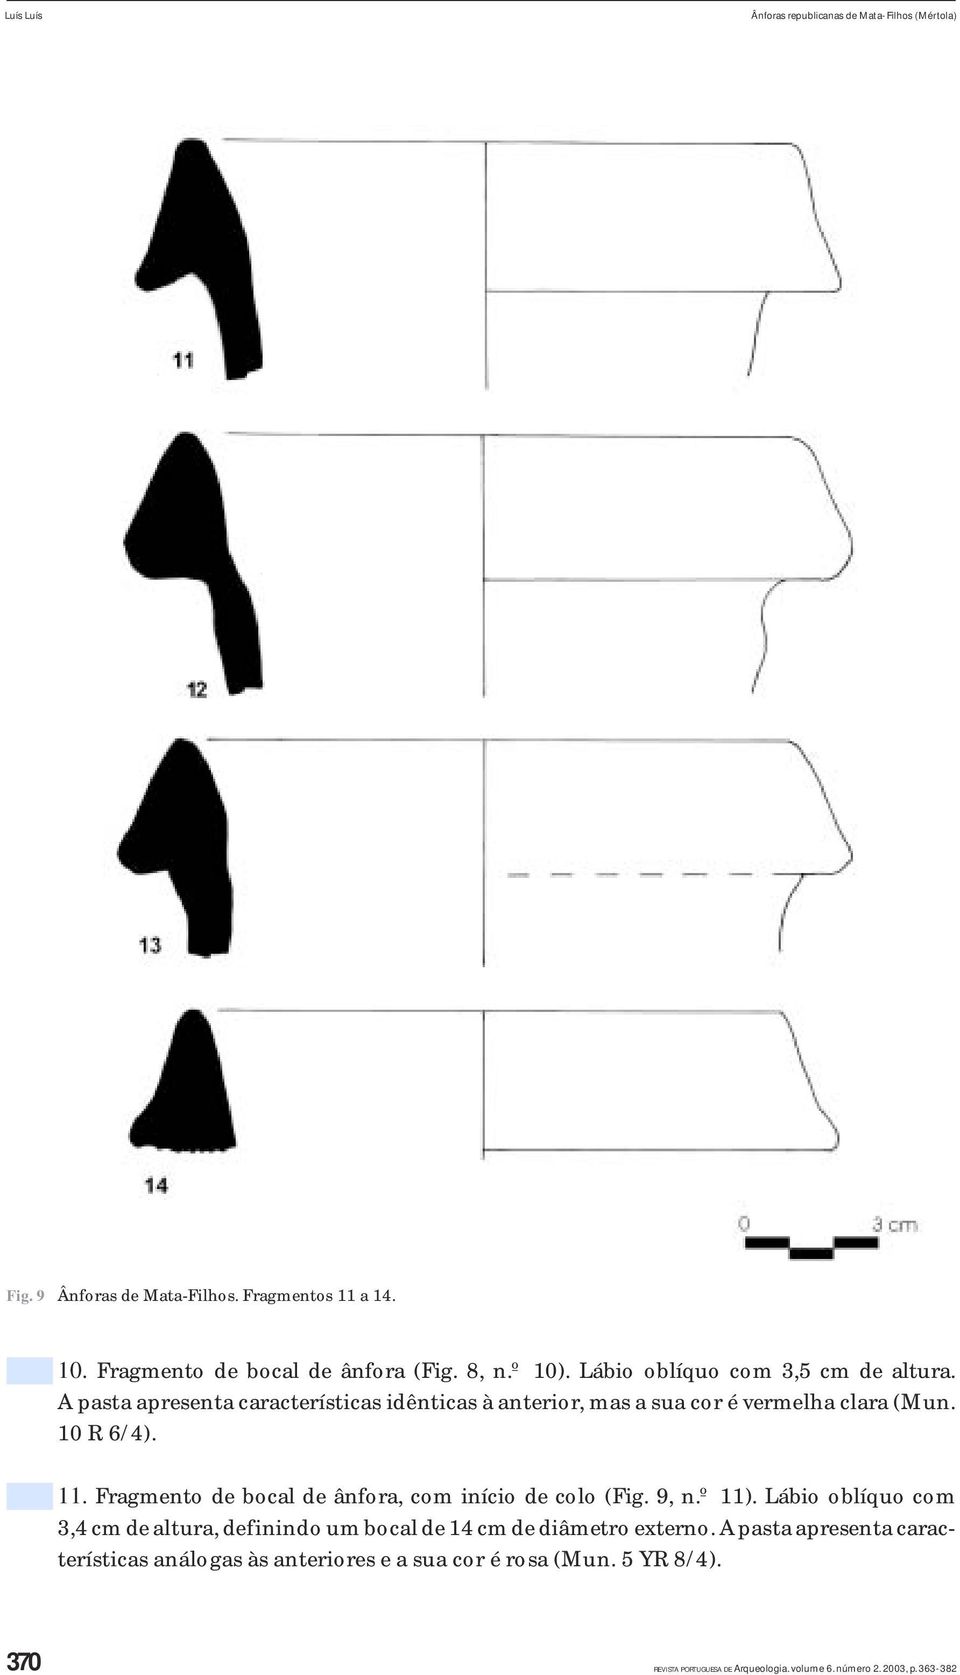 Fragmento de bocal de ânfora, com início de colo (Fig. 9, n.º 11). Lábio oblíquo com 3,4 cm de altura, definindo um bocal de 14 cm de diâmetro externo.